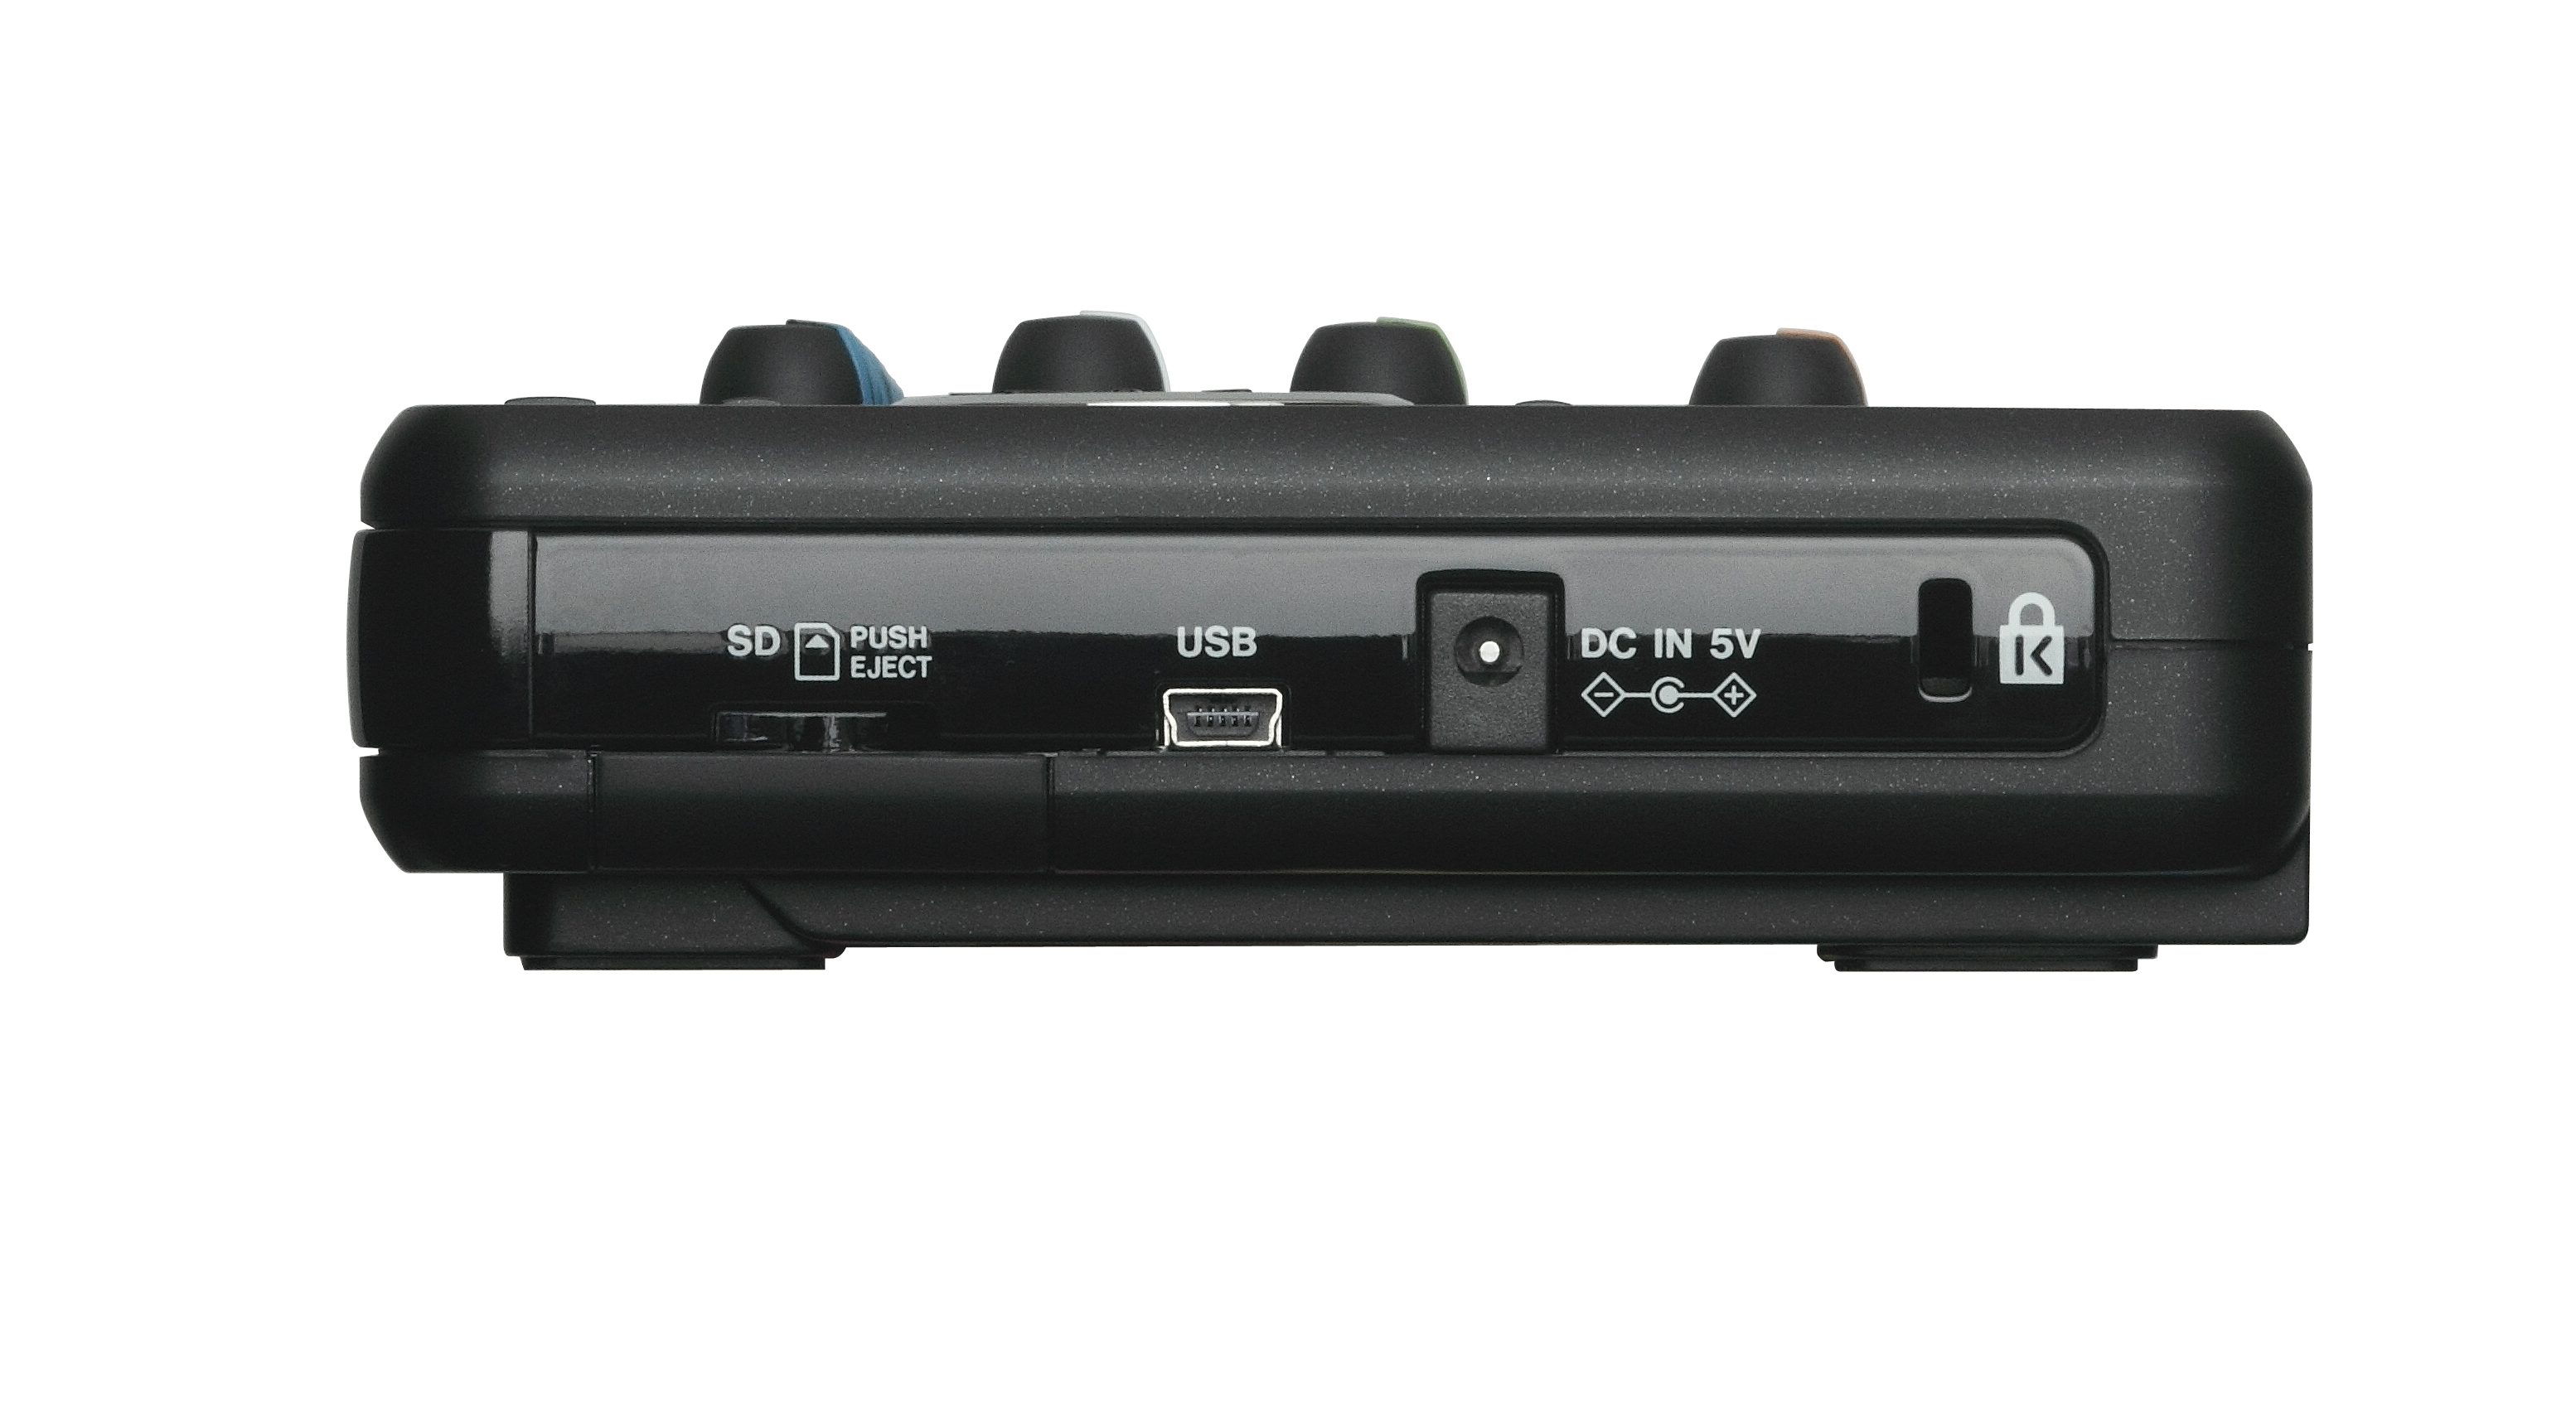 DA-6400